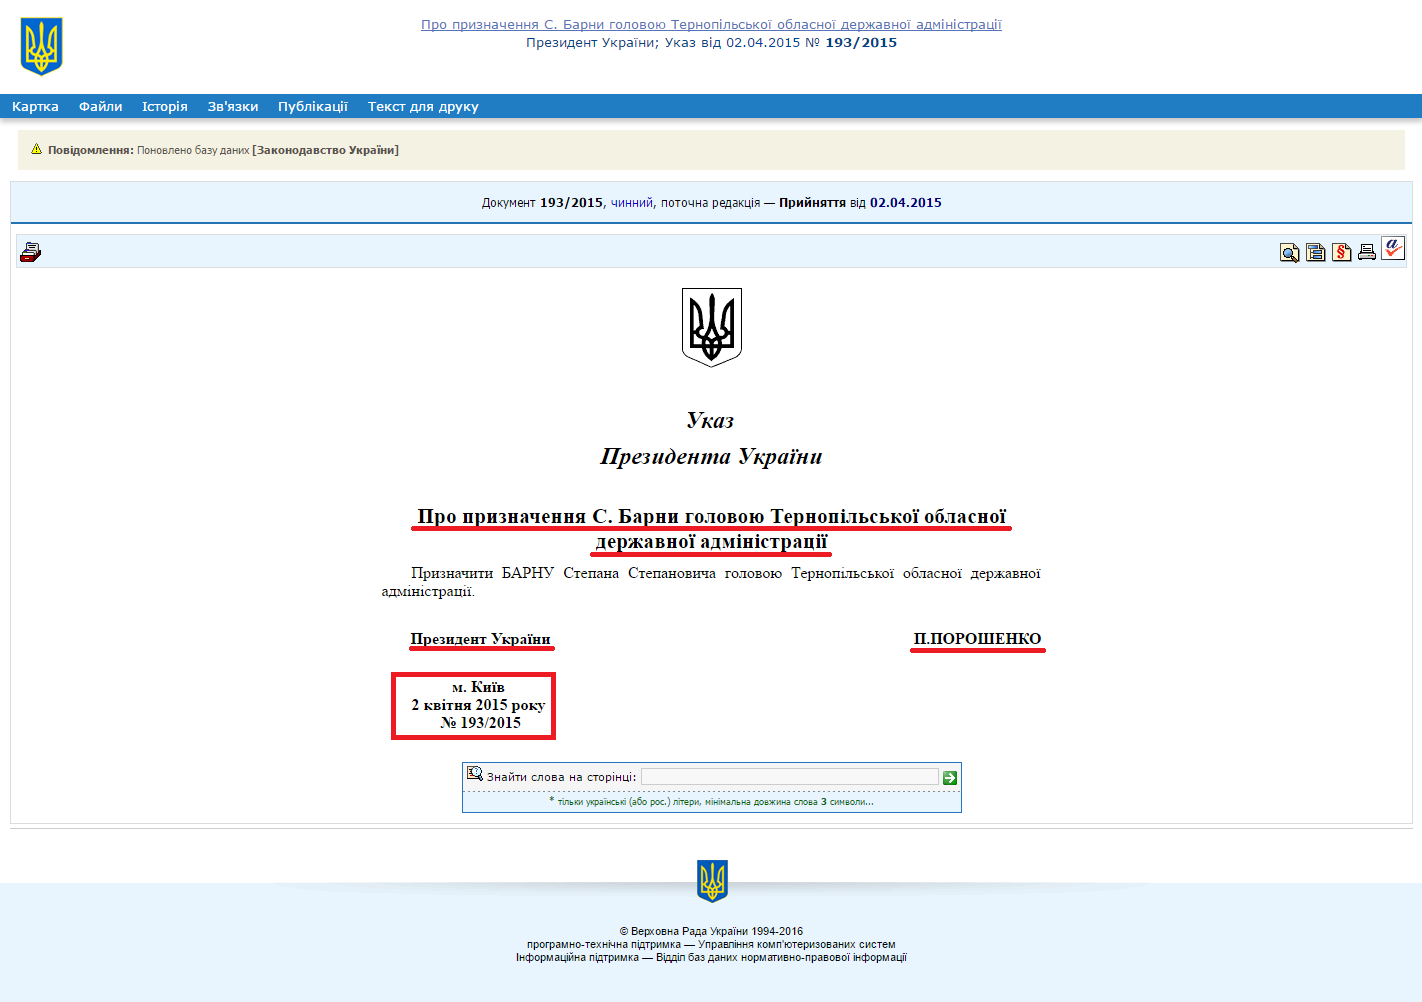 http://zakon2.rada.gov.ua/laws/show/193/2015